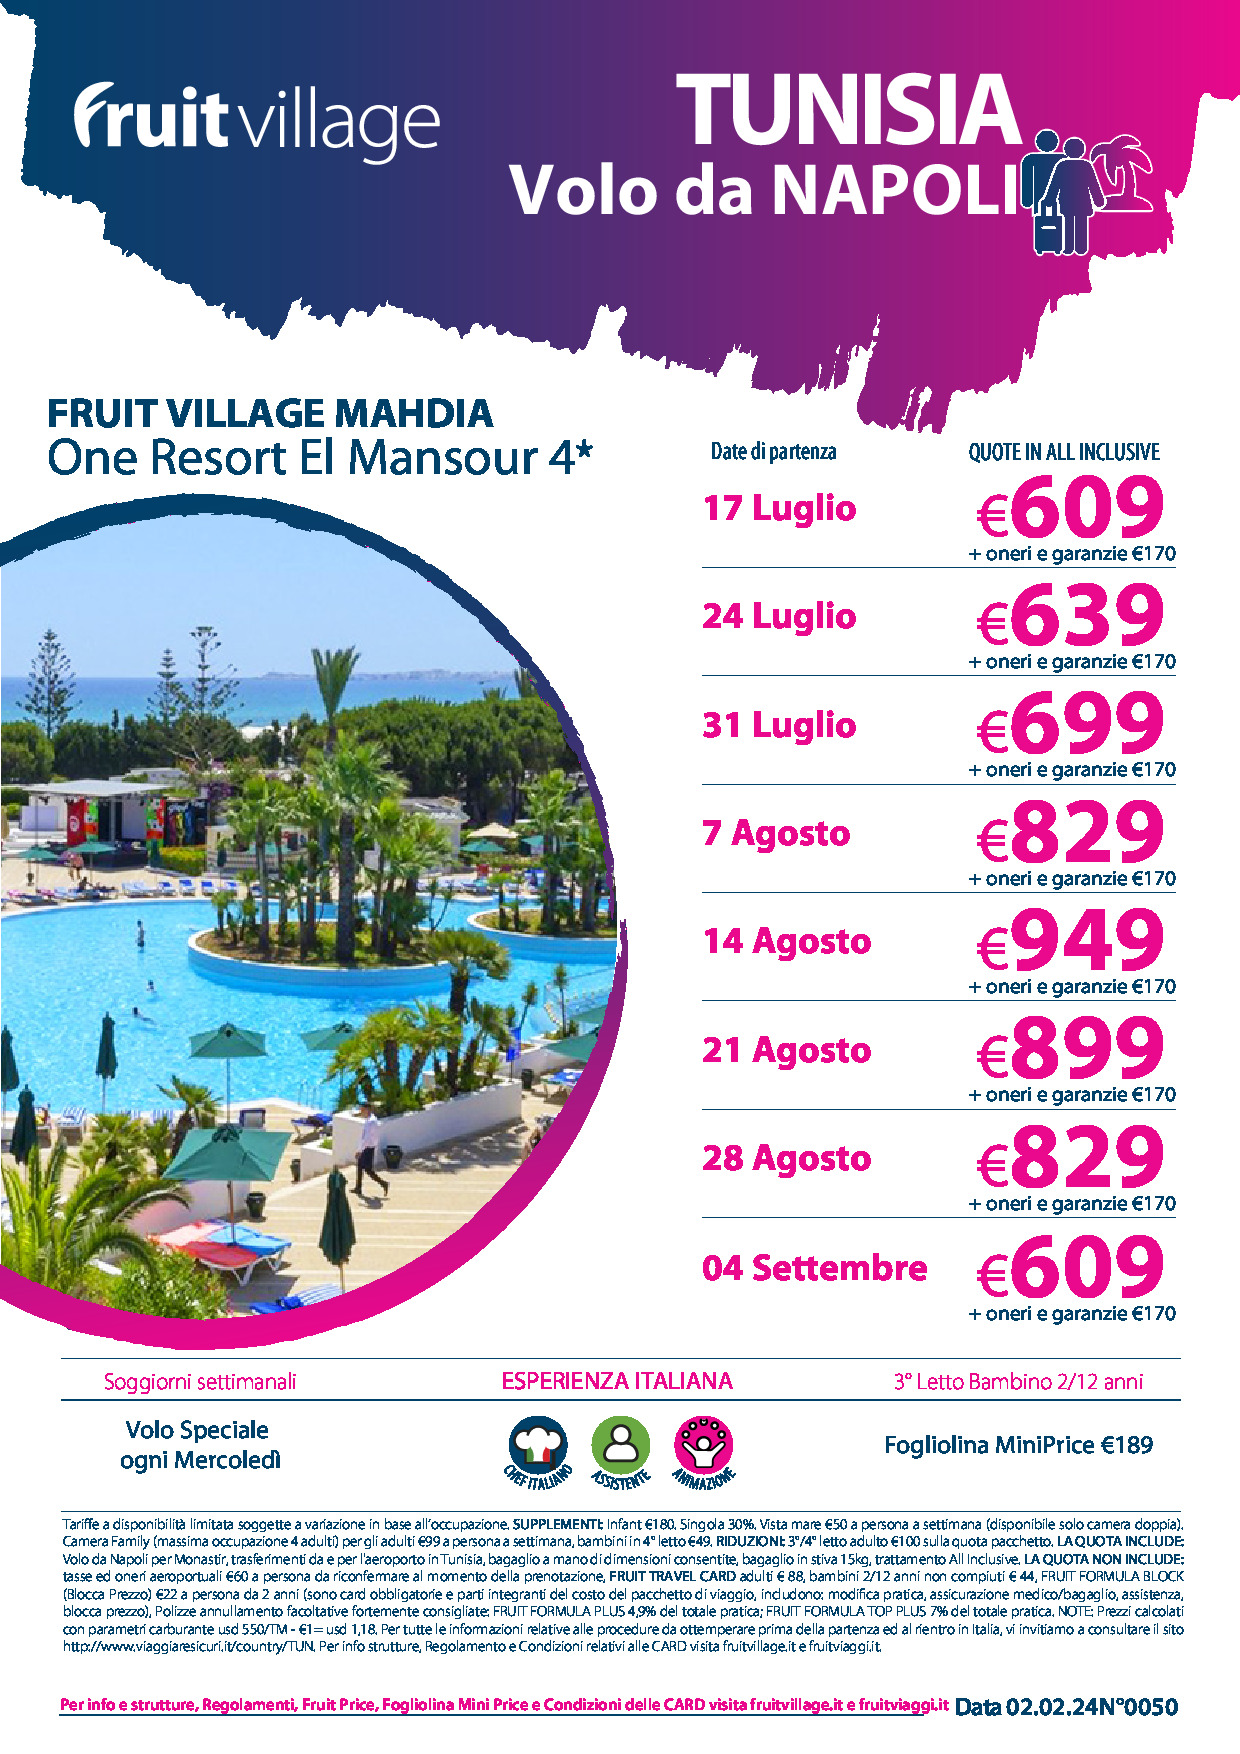 FRUIT VILLAGE Mahdia One Resort El Mansour con volo speciale da Napoli